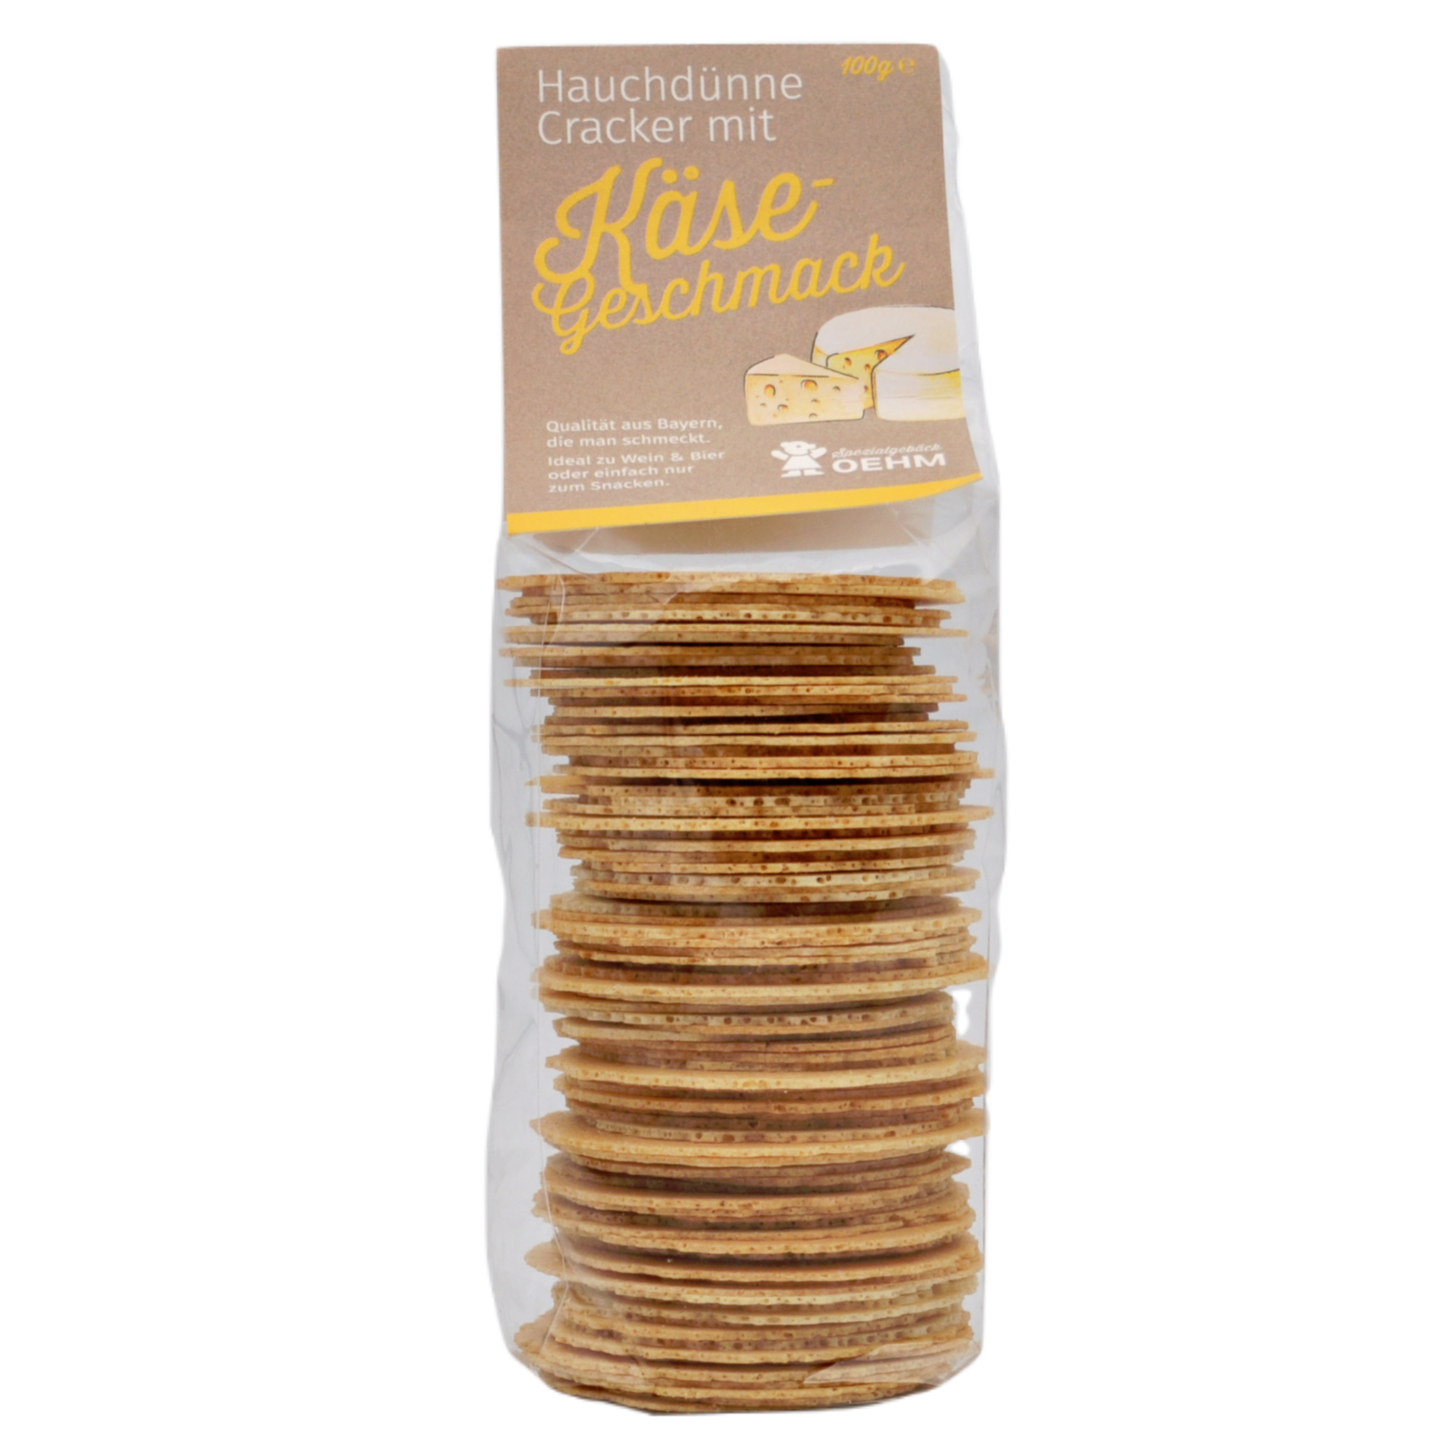 Cracker mit Käse - Geschmack je 100g im 6er Pack